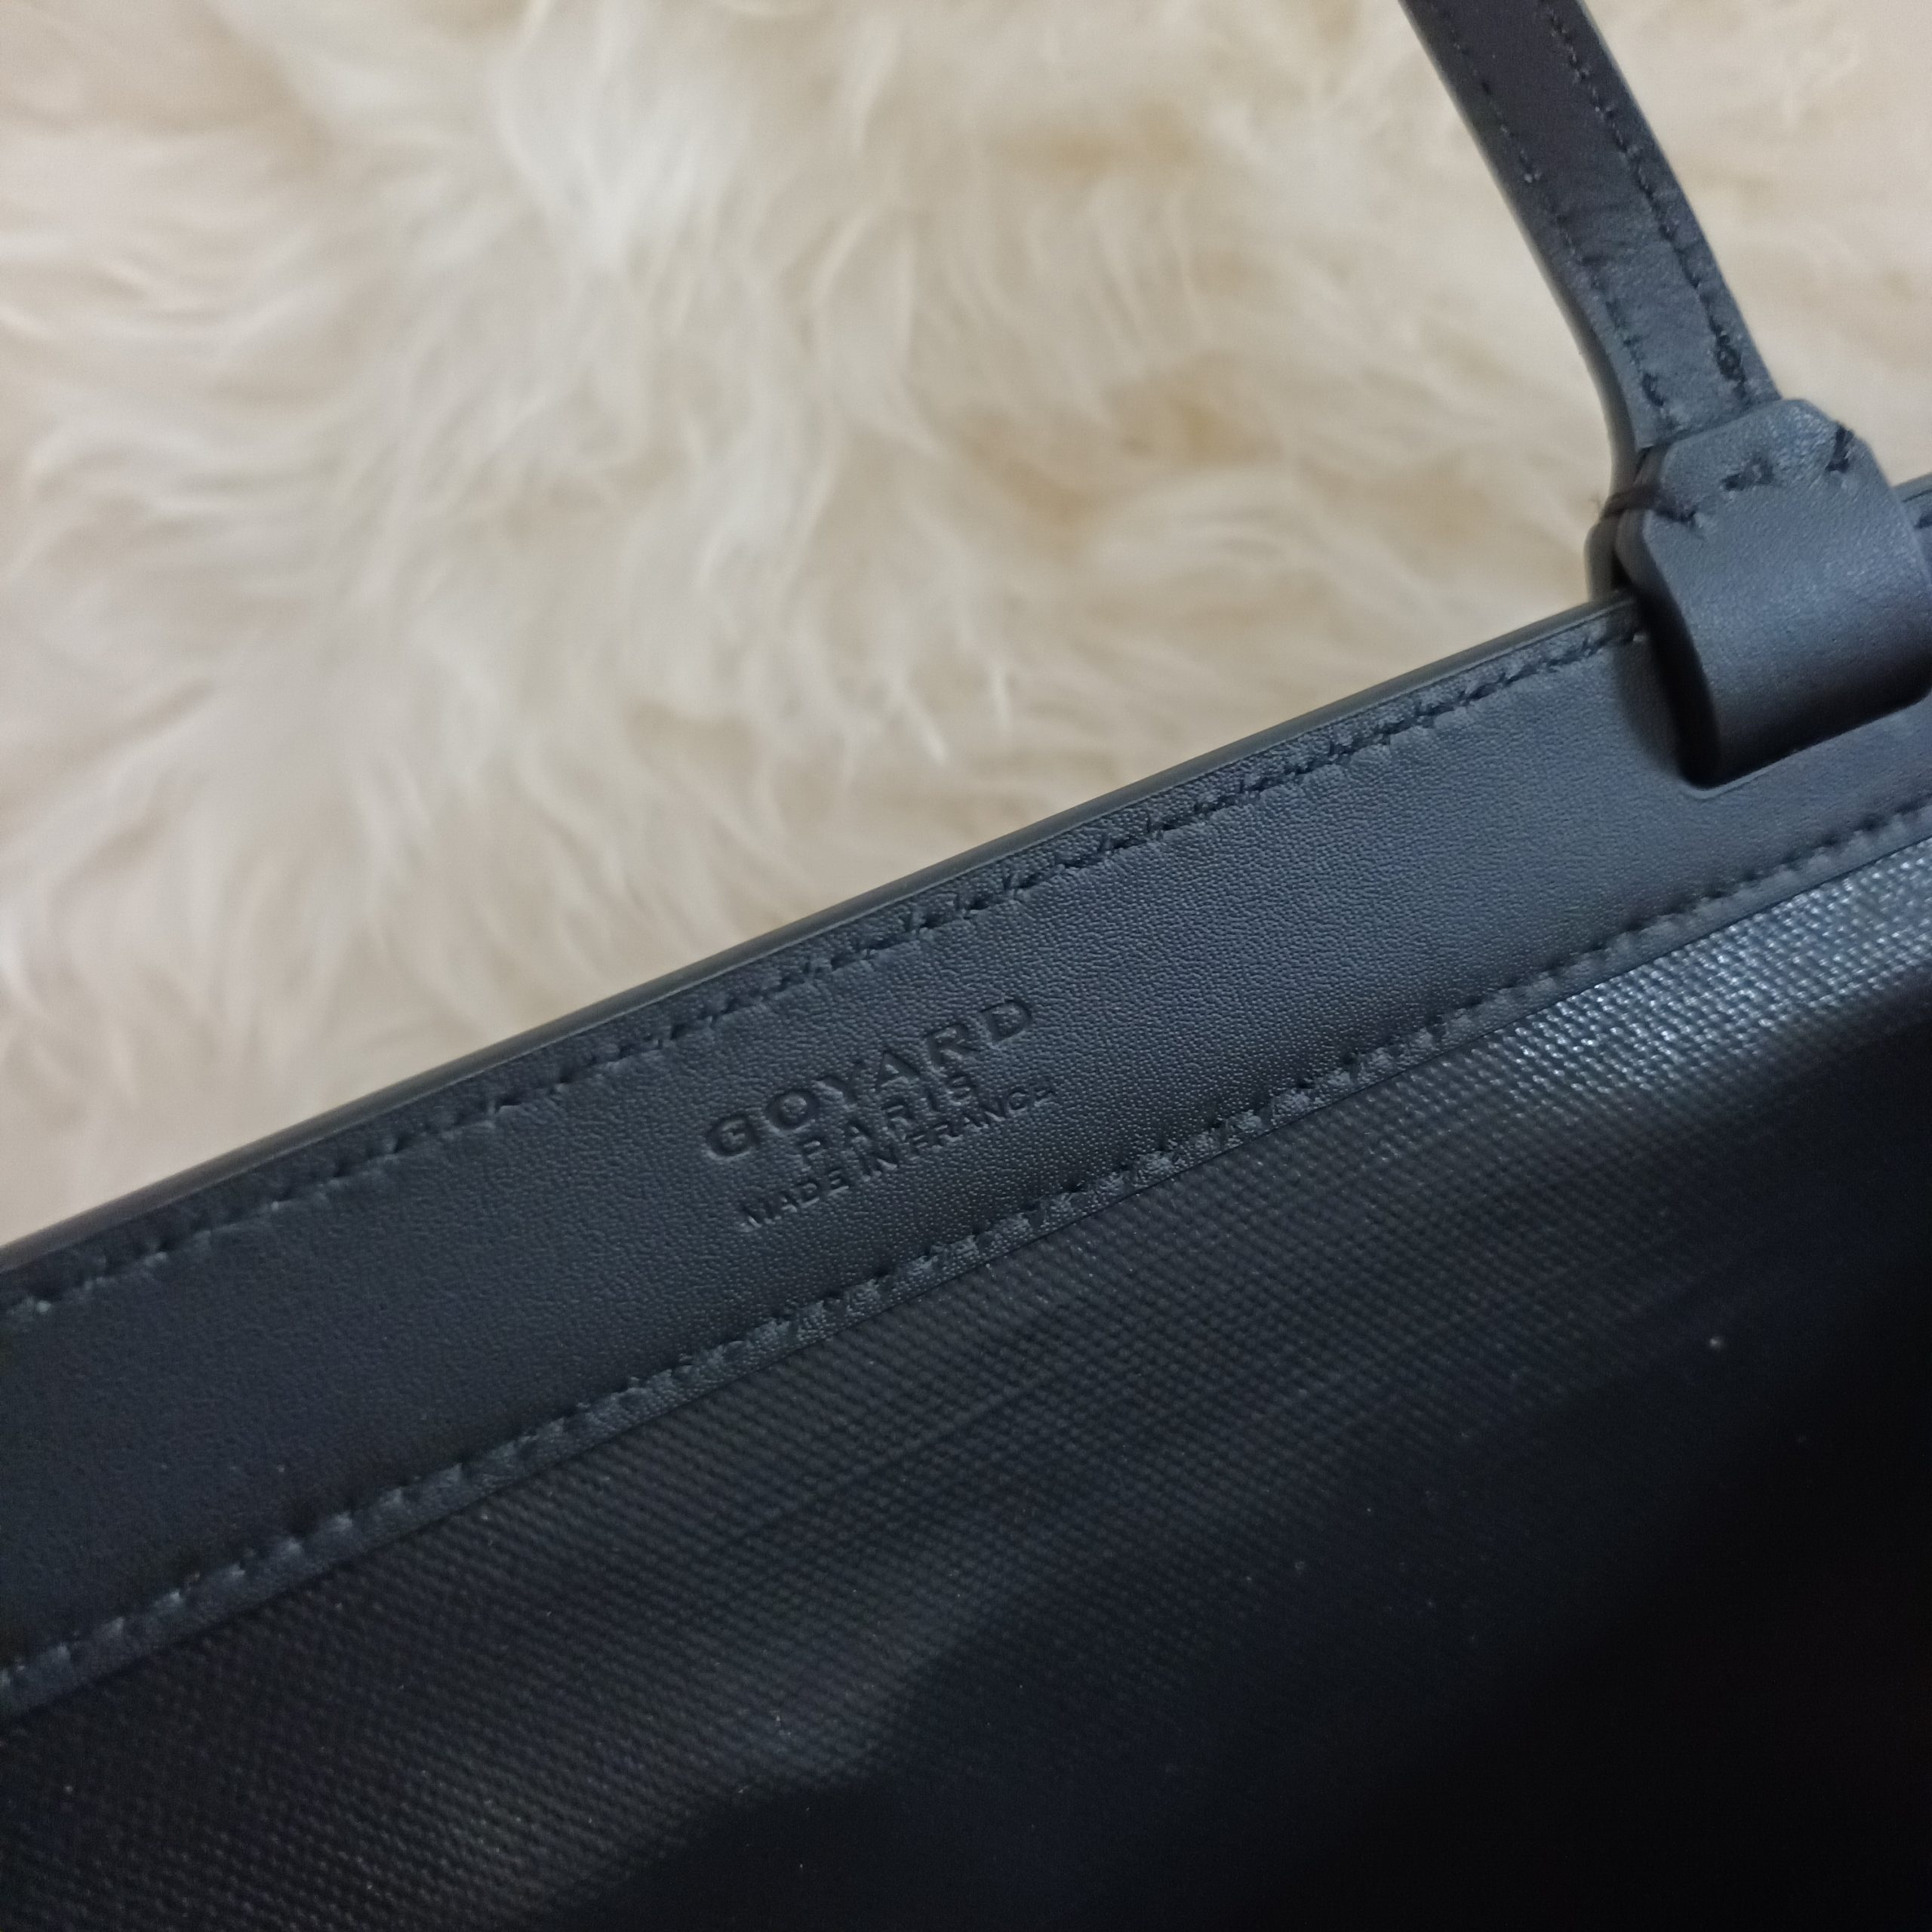 GOYARD Bellechasse PM Tote Bag PVC Leather Black Brown Purse 90189066